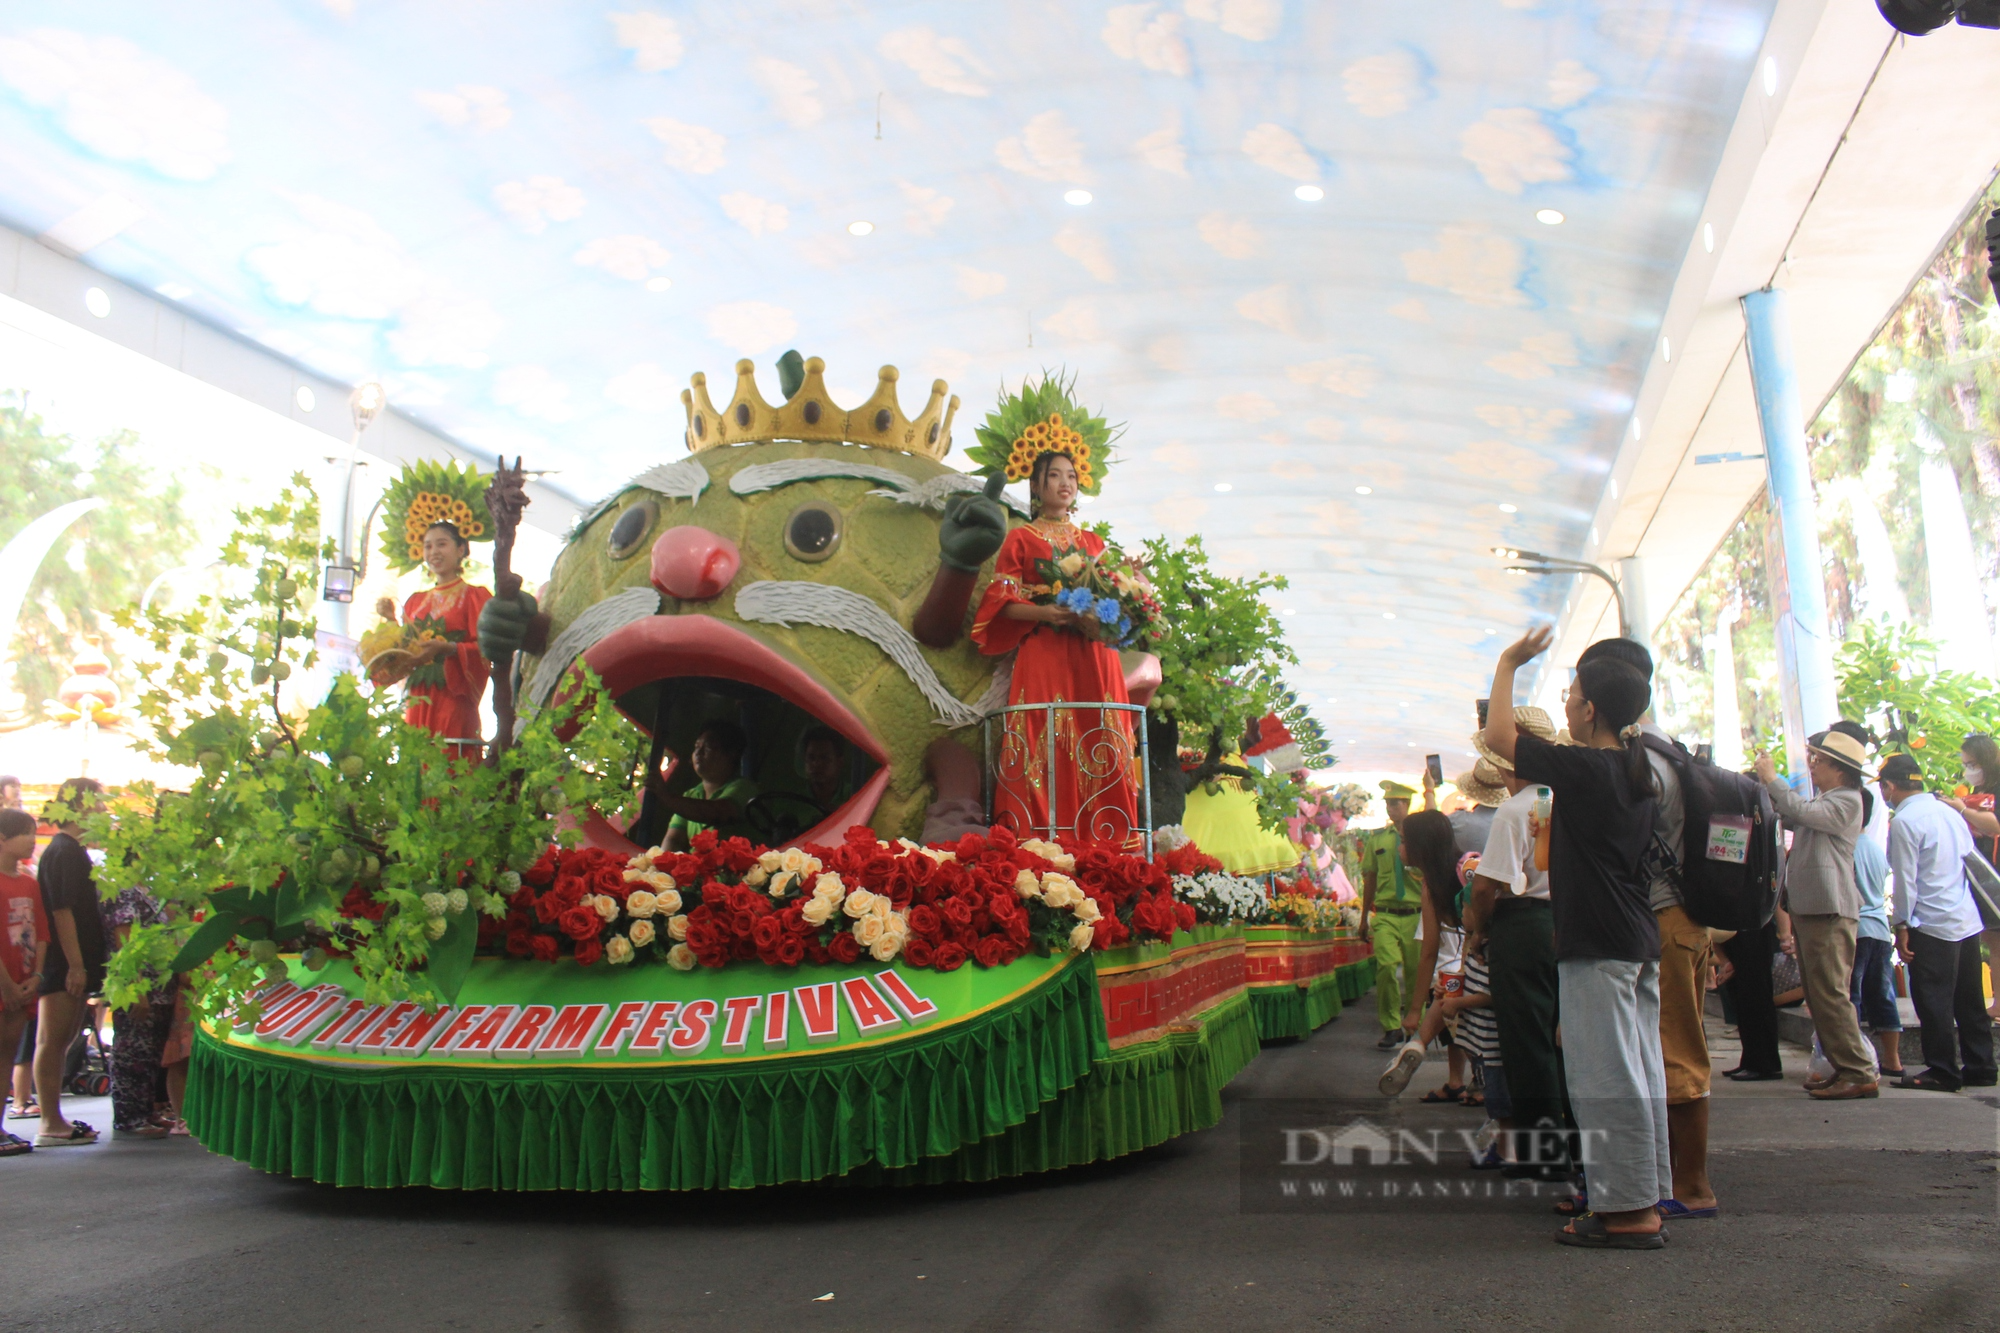 Lễ hội Trái cây Nam Bộ hoành tráng sắp diễn ra tại Suối Tiên, miễn phí vé vào cổng cho trẻ em- Ảnh 1.